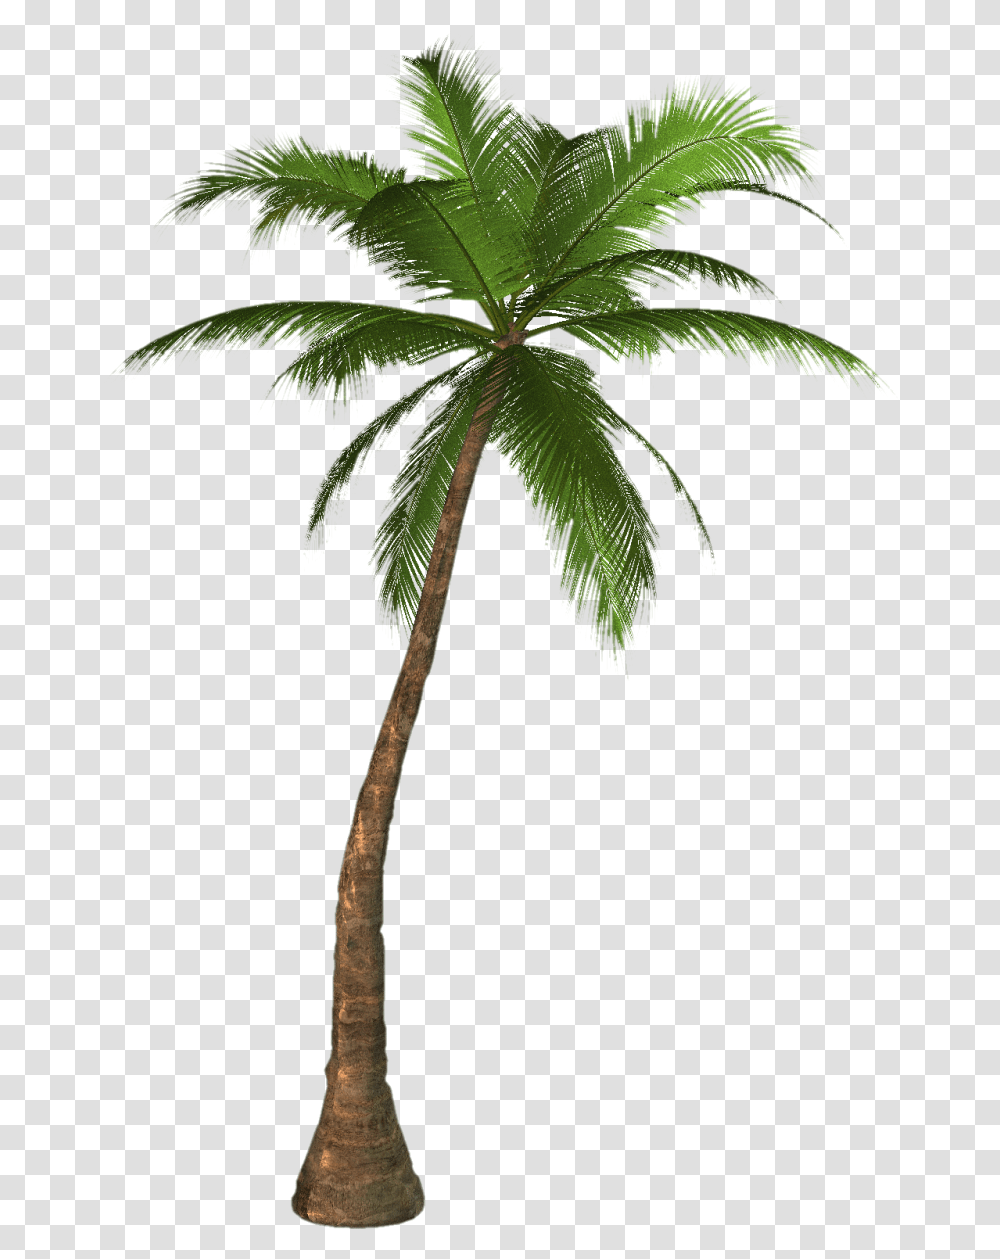 Palm Tree Image, Plant, Arecaceae, Leaf Transparent Png